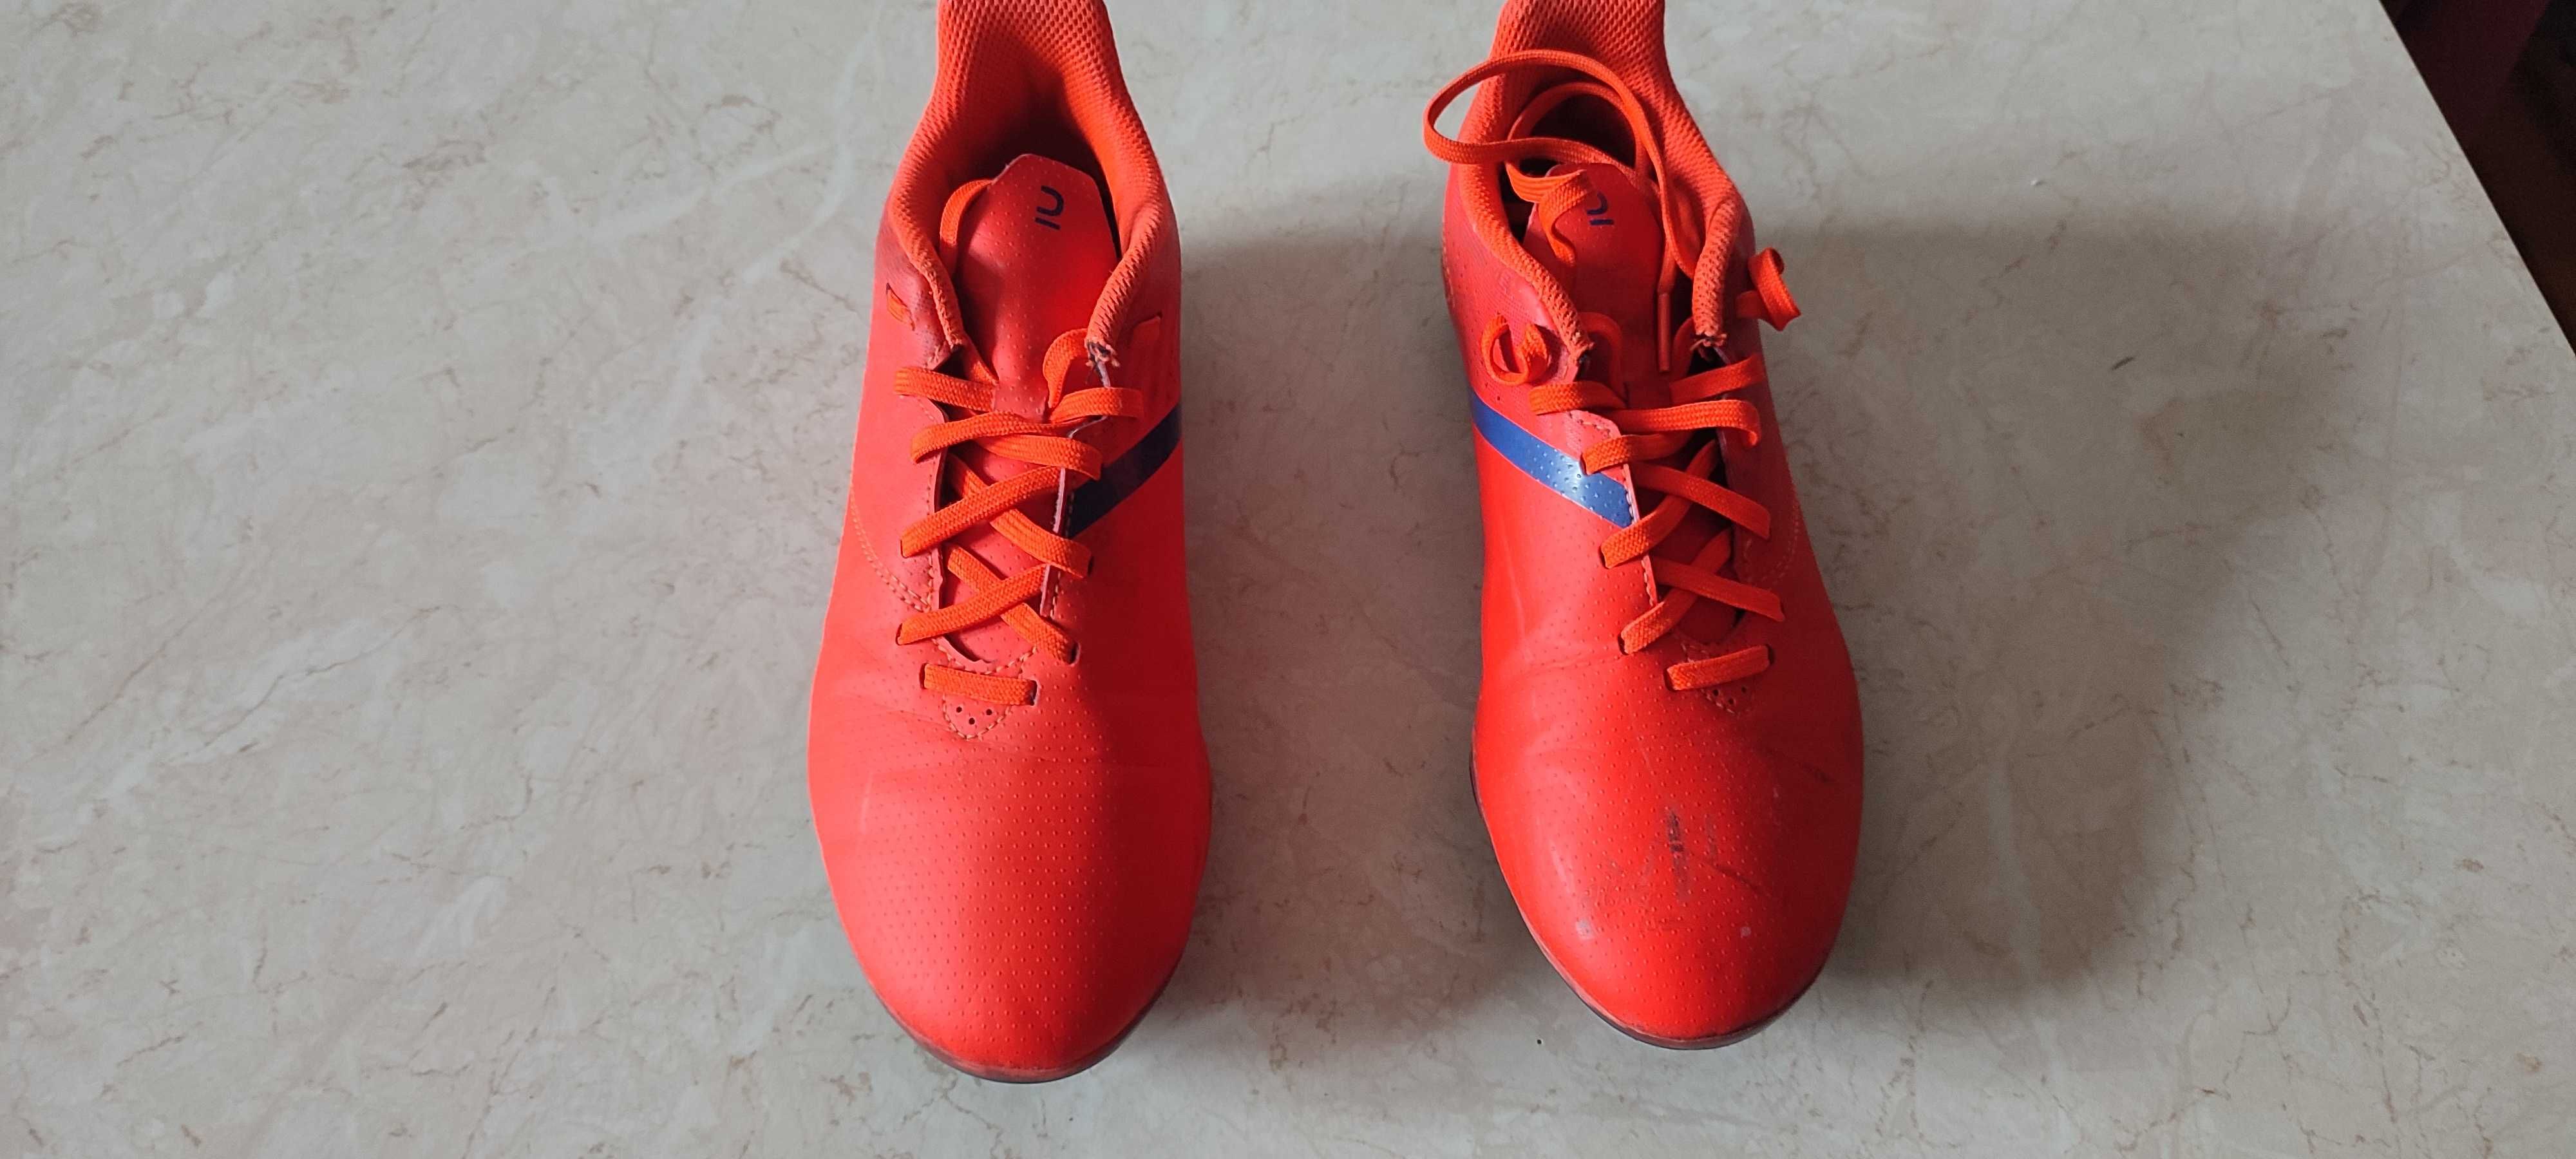 Buty piłkarskie korki czerwone, rozmiar 36